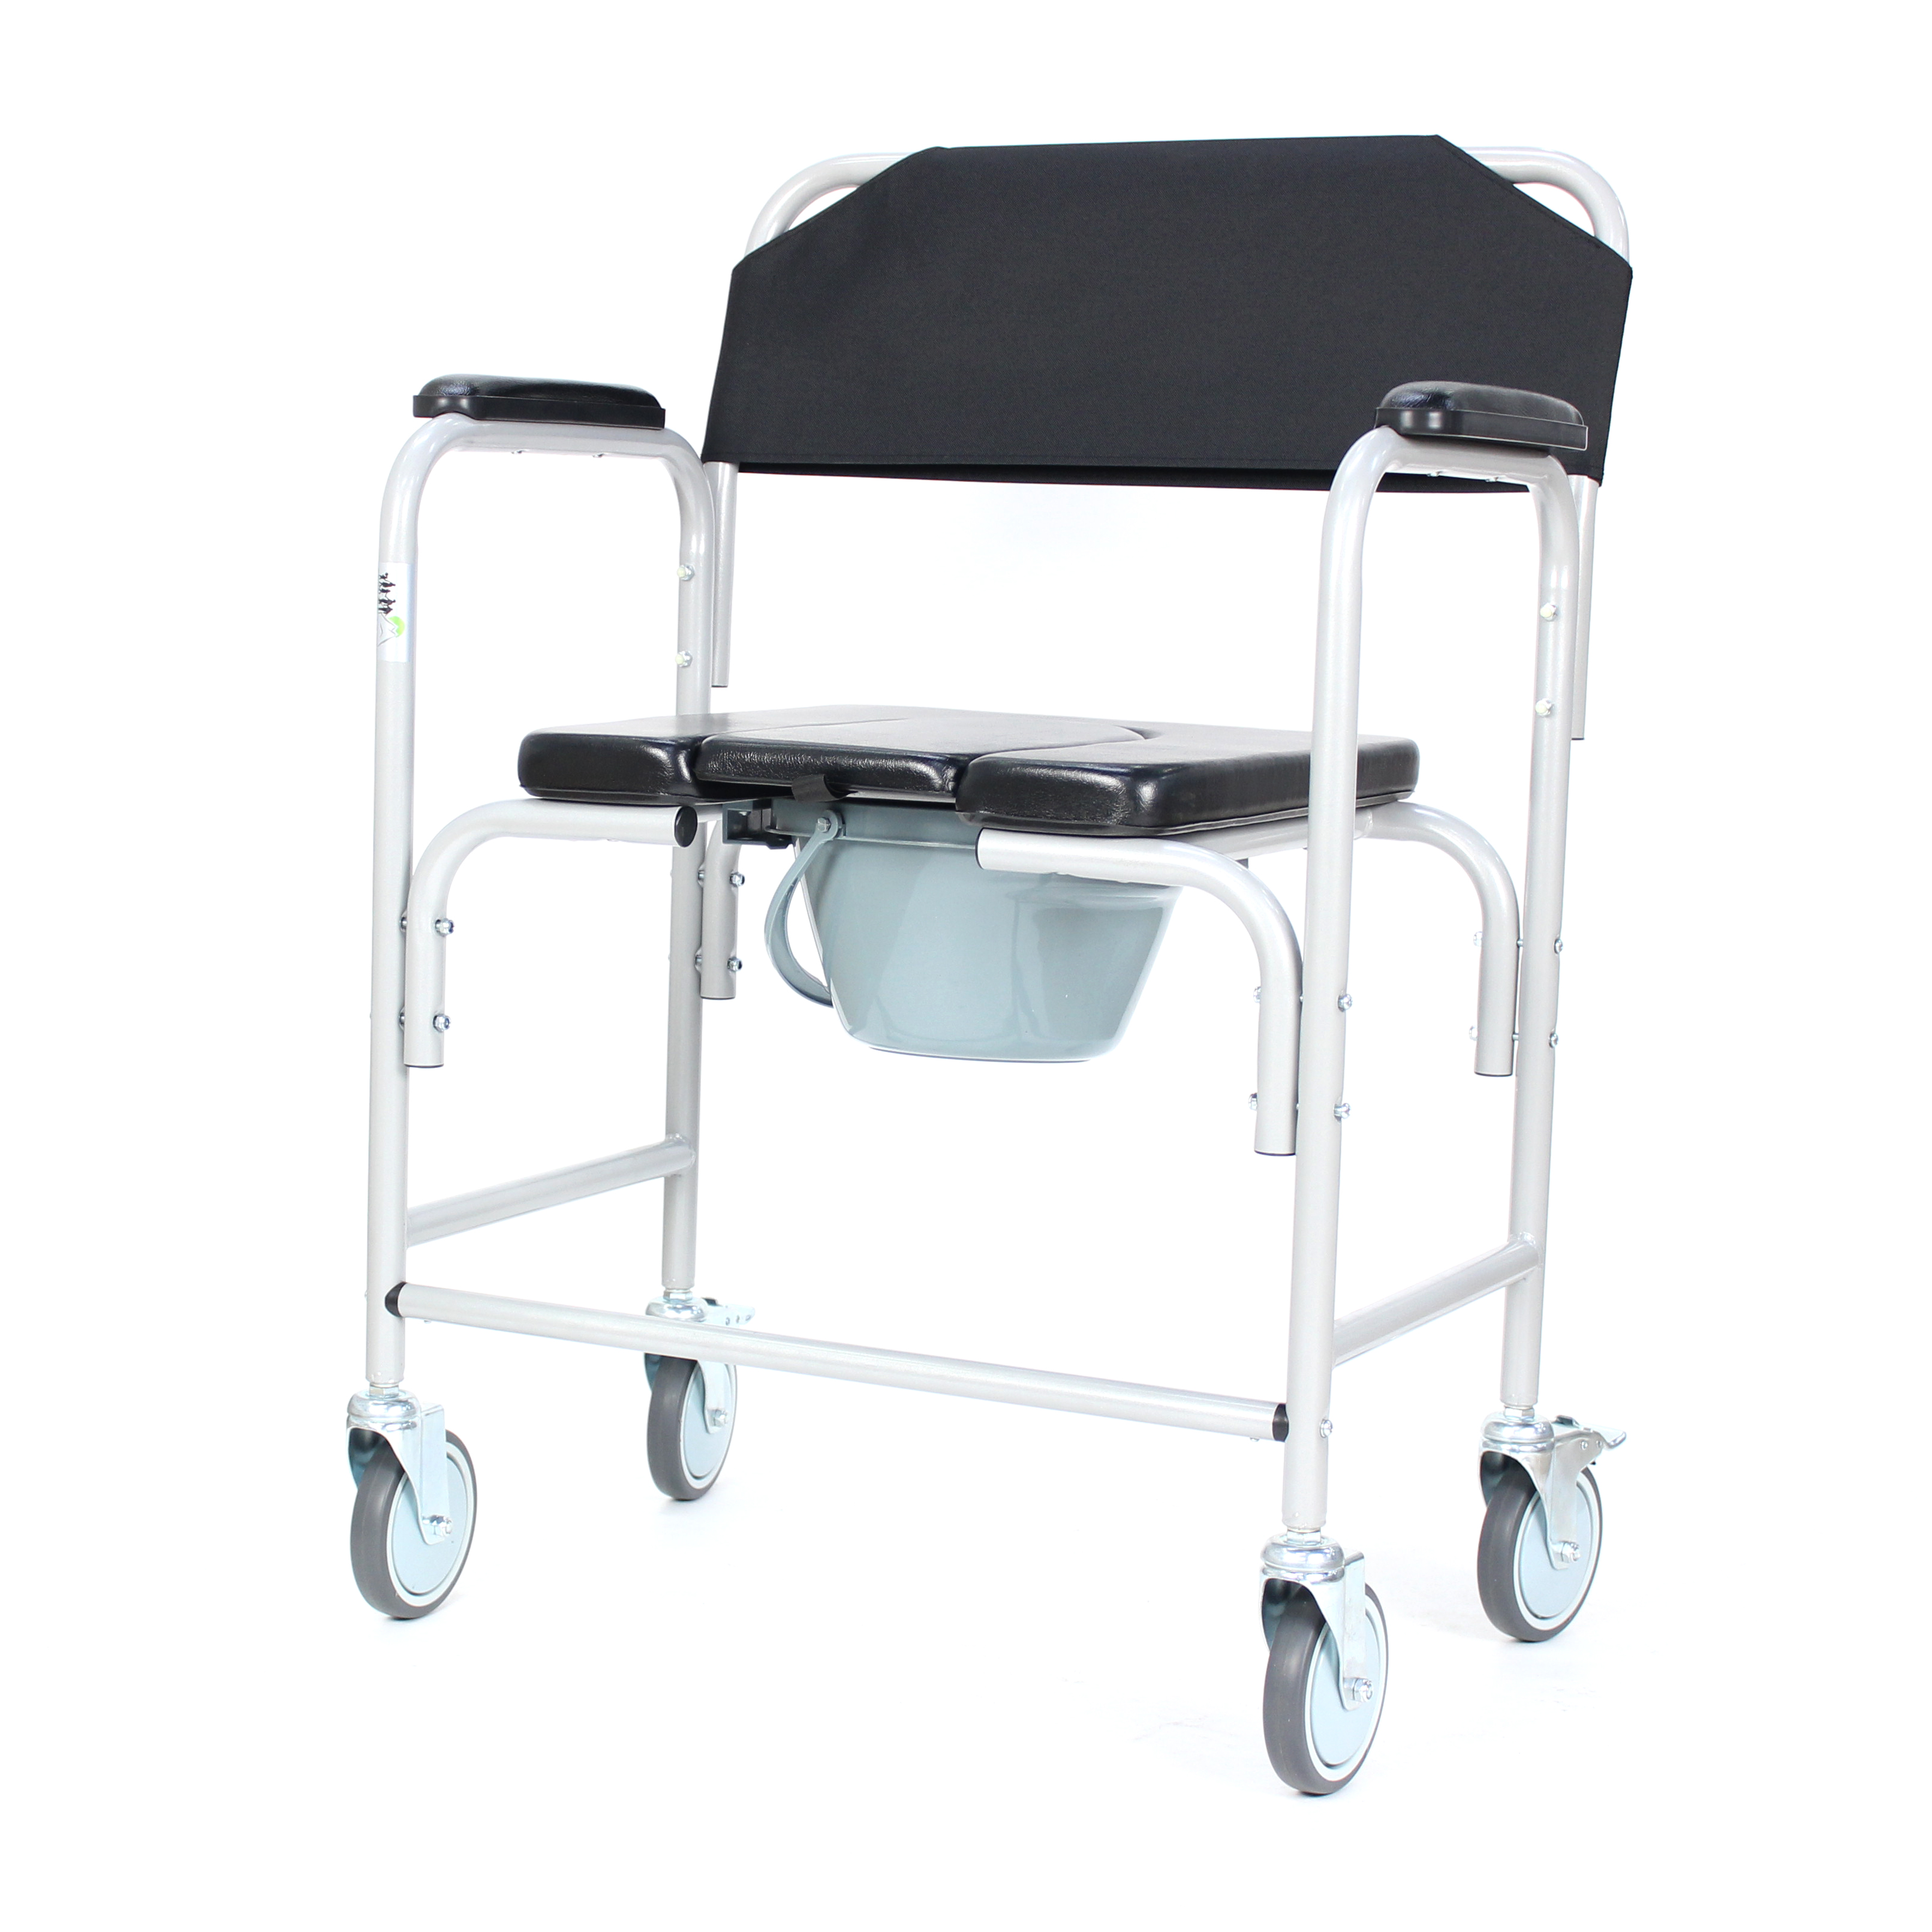 ผู้ผลิตอุปกรณ์กายภาพบำบัดขายส่งเก้าอี้หม้อขั้นต่ำ 50 ชิ้นเก้าอี้ห้องน้ำสำหรับผู้ป่วย